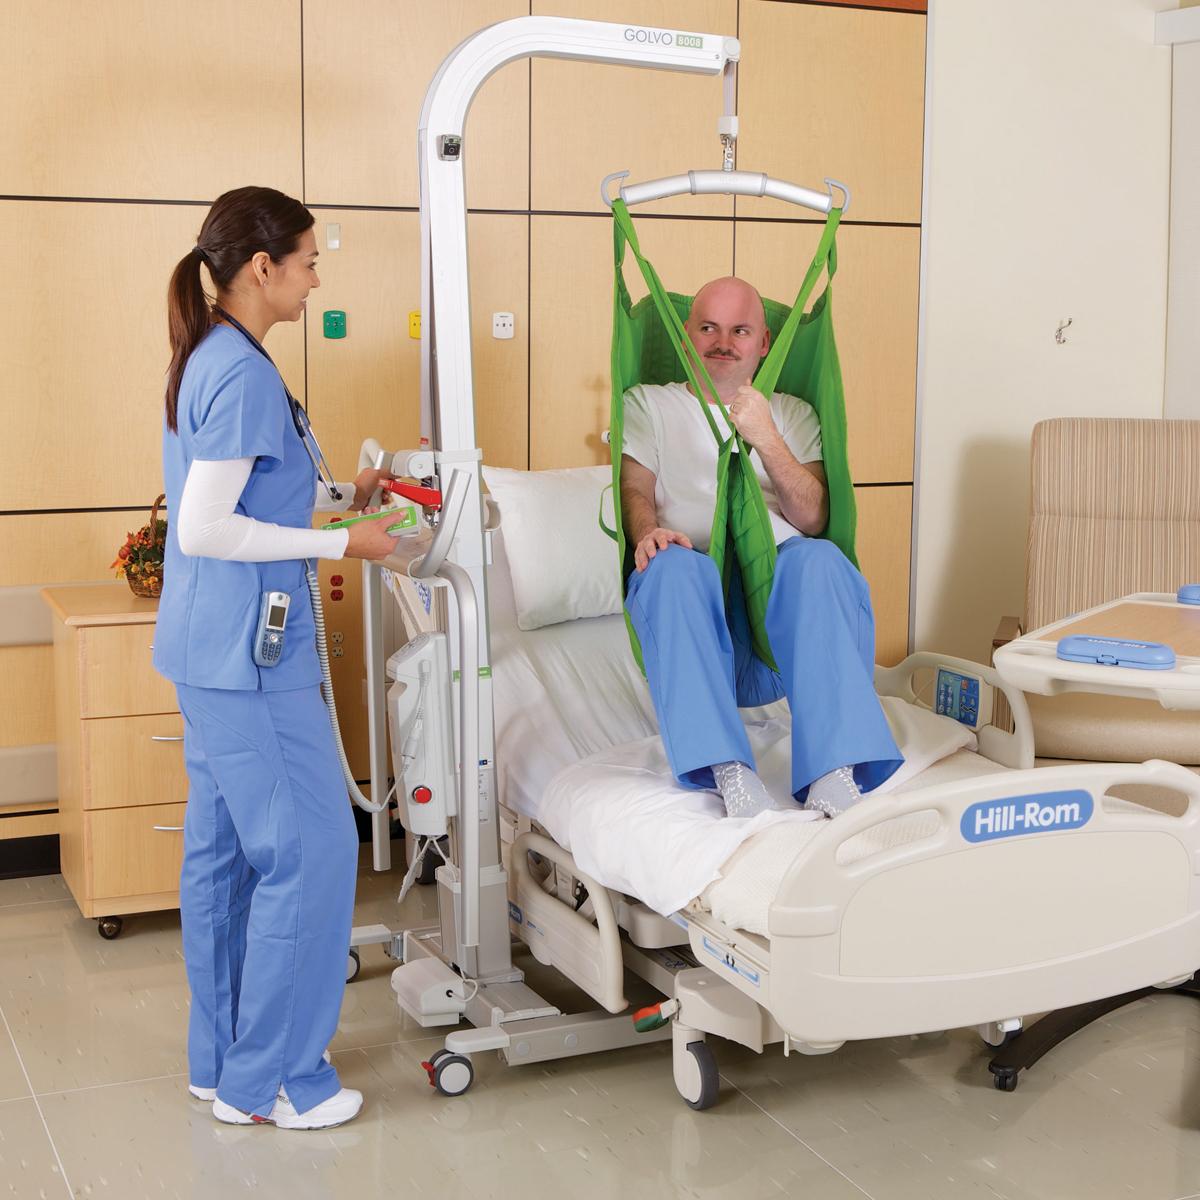 Patient, der mit einem von einem Klinikmitarbeiter bedienten Golvo Mobilen Lifter über ein Krankenhausbett gehoben wird